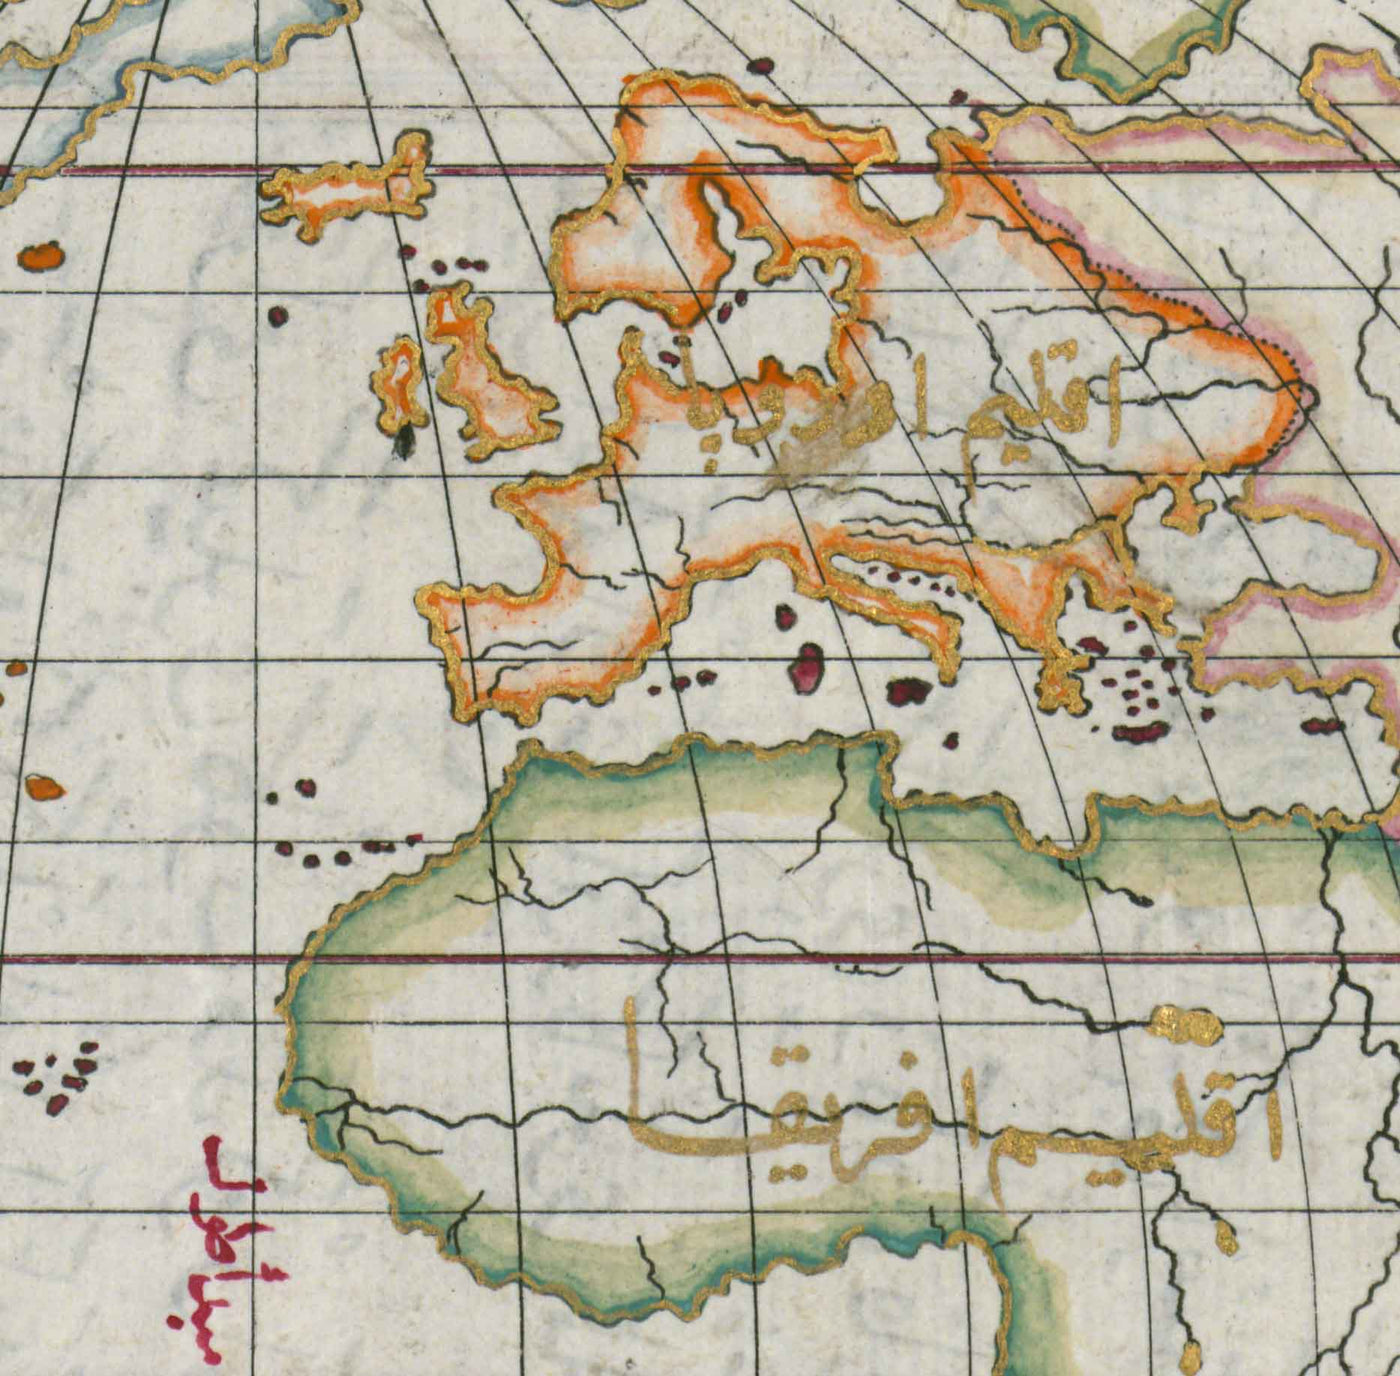 Ancienne carte du monde arabe en 1525 par Piri Reis - Amérique du Nord, Amérique du Sud, Europe, Afrique, Asie